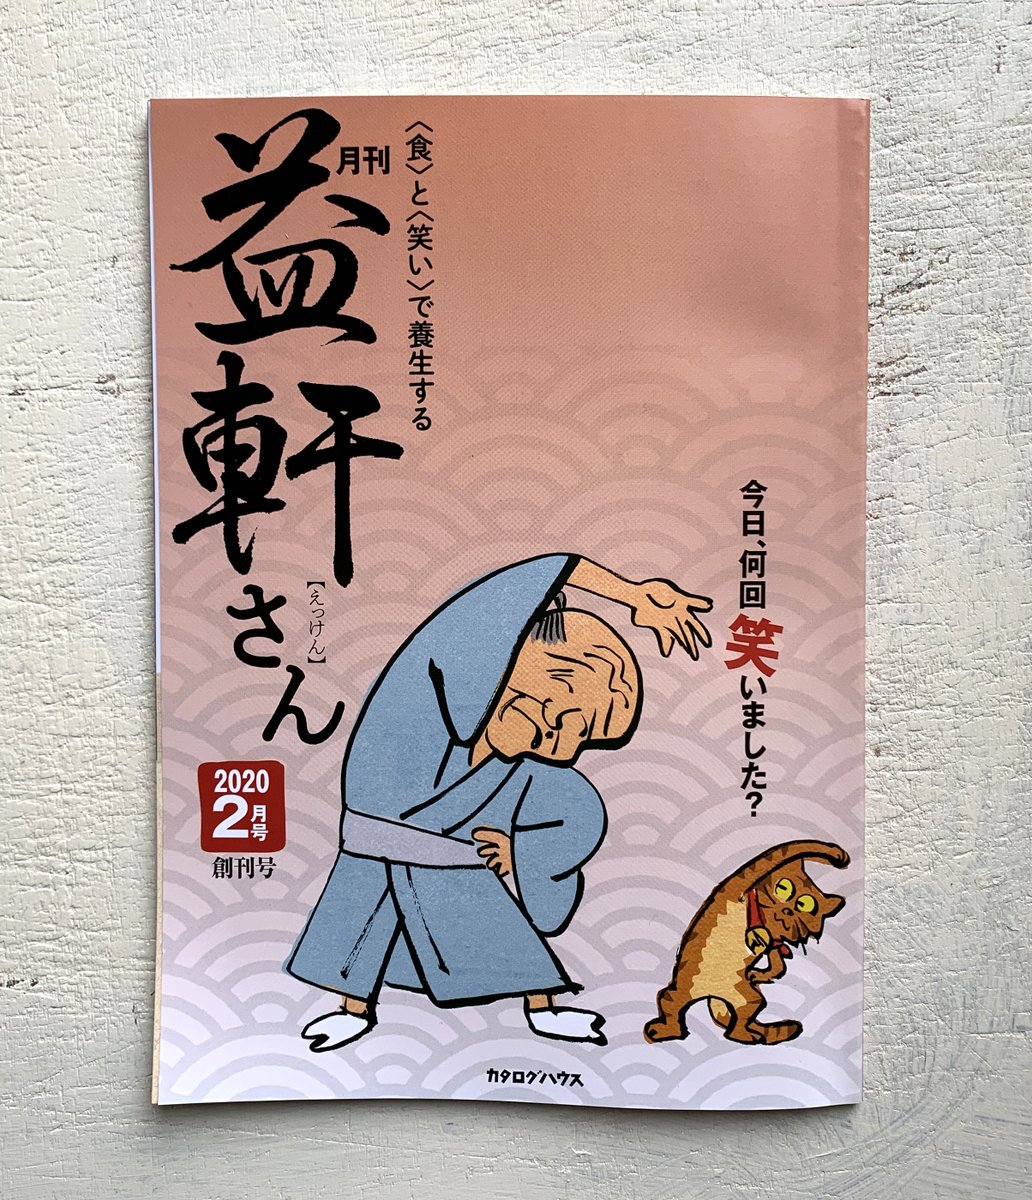 「通販生活」でおなじみのカタログハウスの新創刊雑誌「月刊益軒さん」の表紙を担当することになりました。
貝原益軒をキャラ化した「えっけんさん」です。
普段から年寄りみのある絵を描いて、これから超高齢化社会を迎える日本で、なんとか100歳まで現役のイラストレーターでいたいです。 